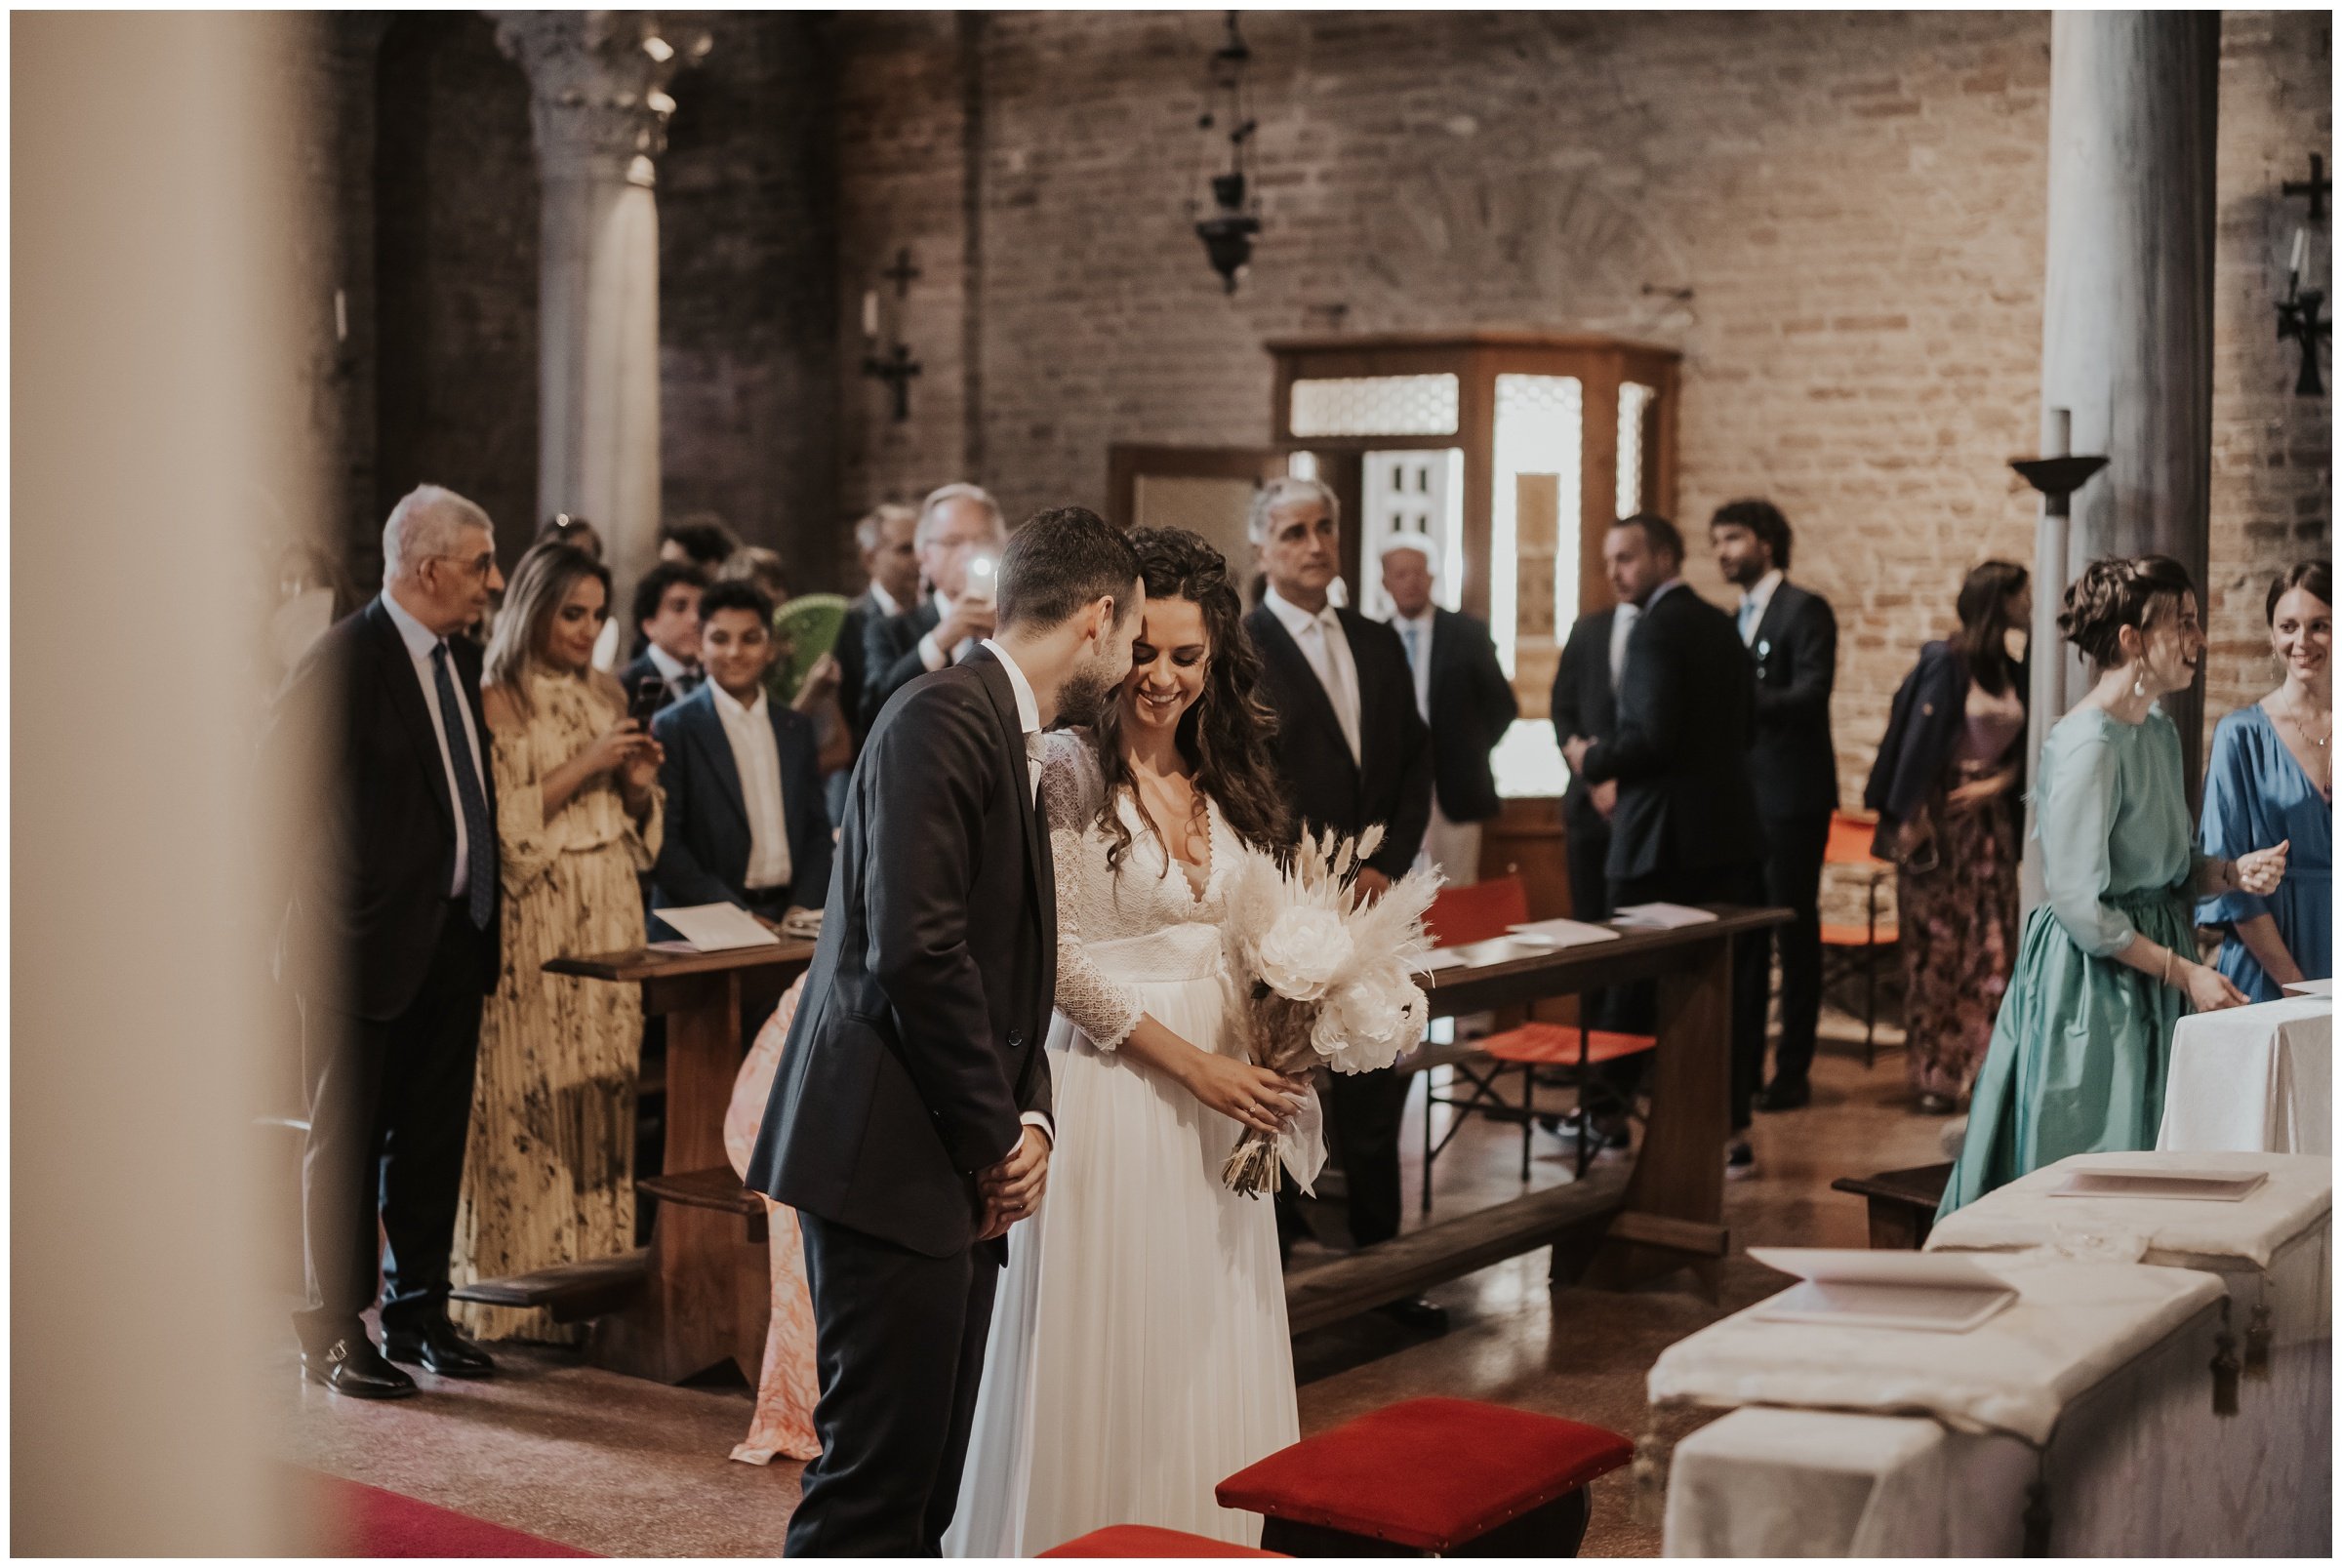 Matrimonio-locanda-cipriani-torcello-fotografo-matrimonio-treviso-fotografo-matrimonio-venezia_0054.jpg